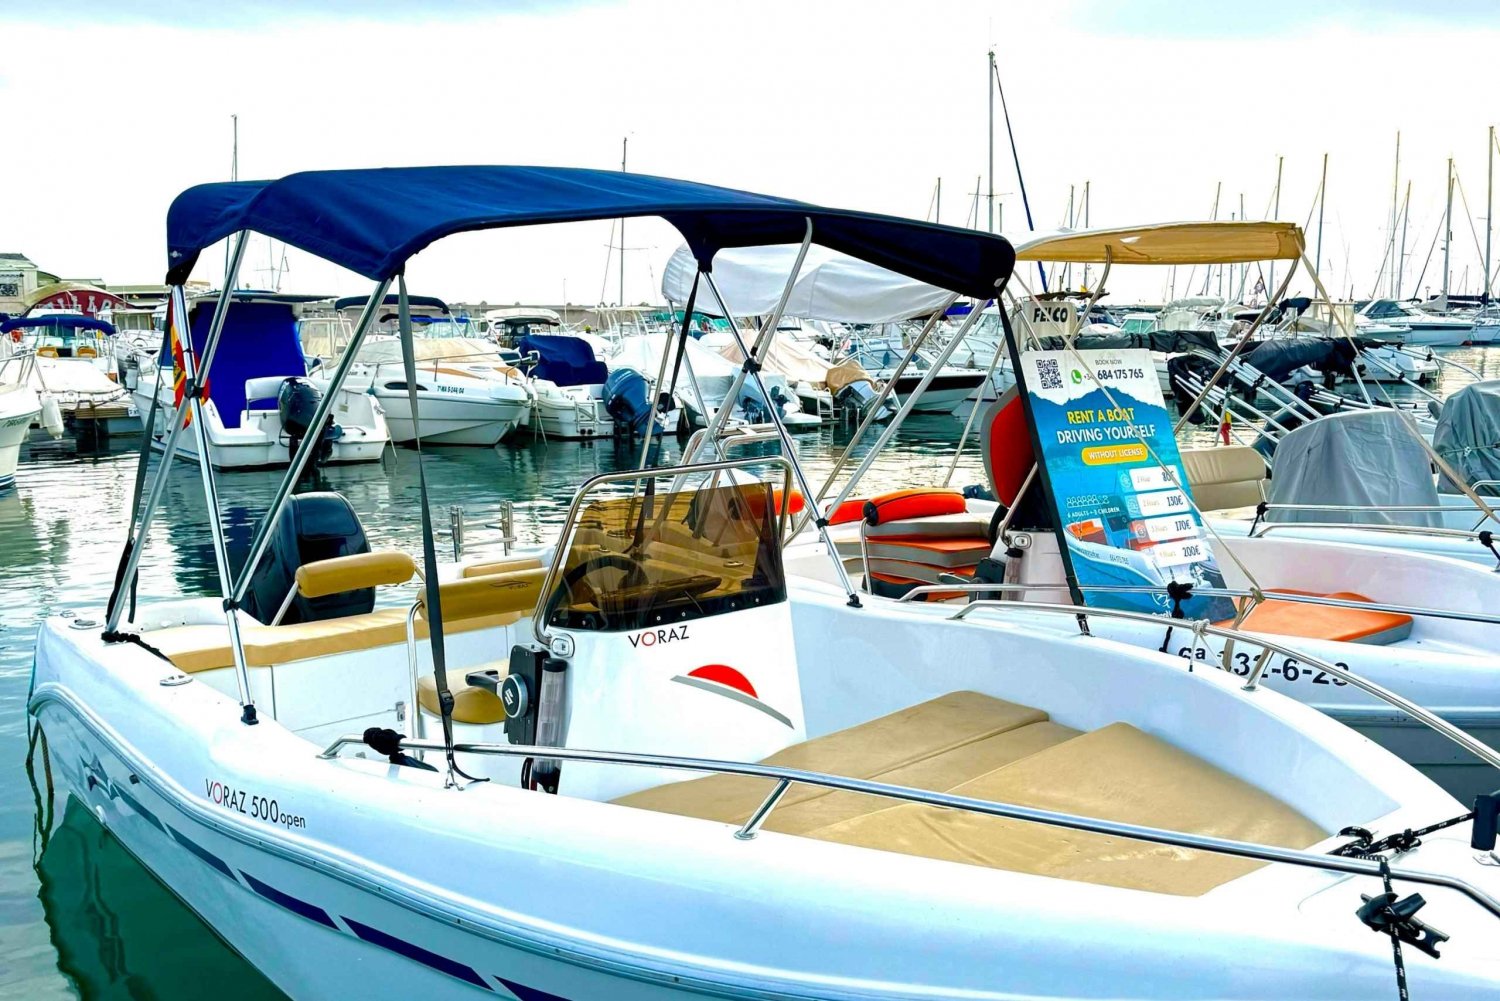 Marbella: Båtutleie kjører deg selv med Dolphin Sighting